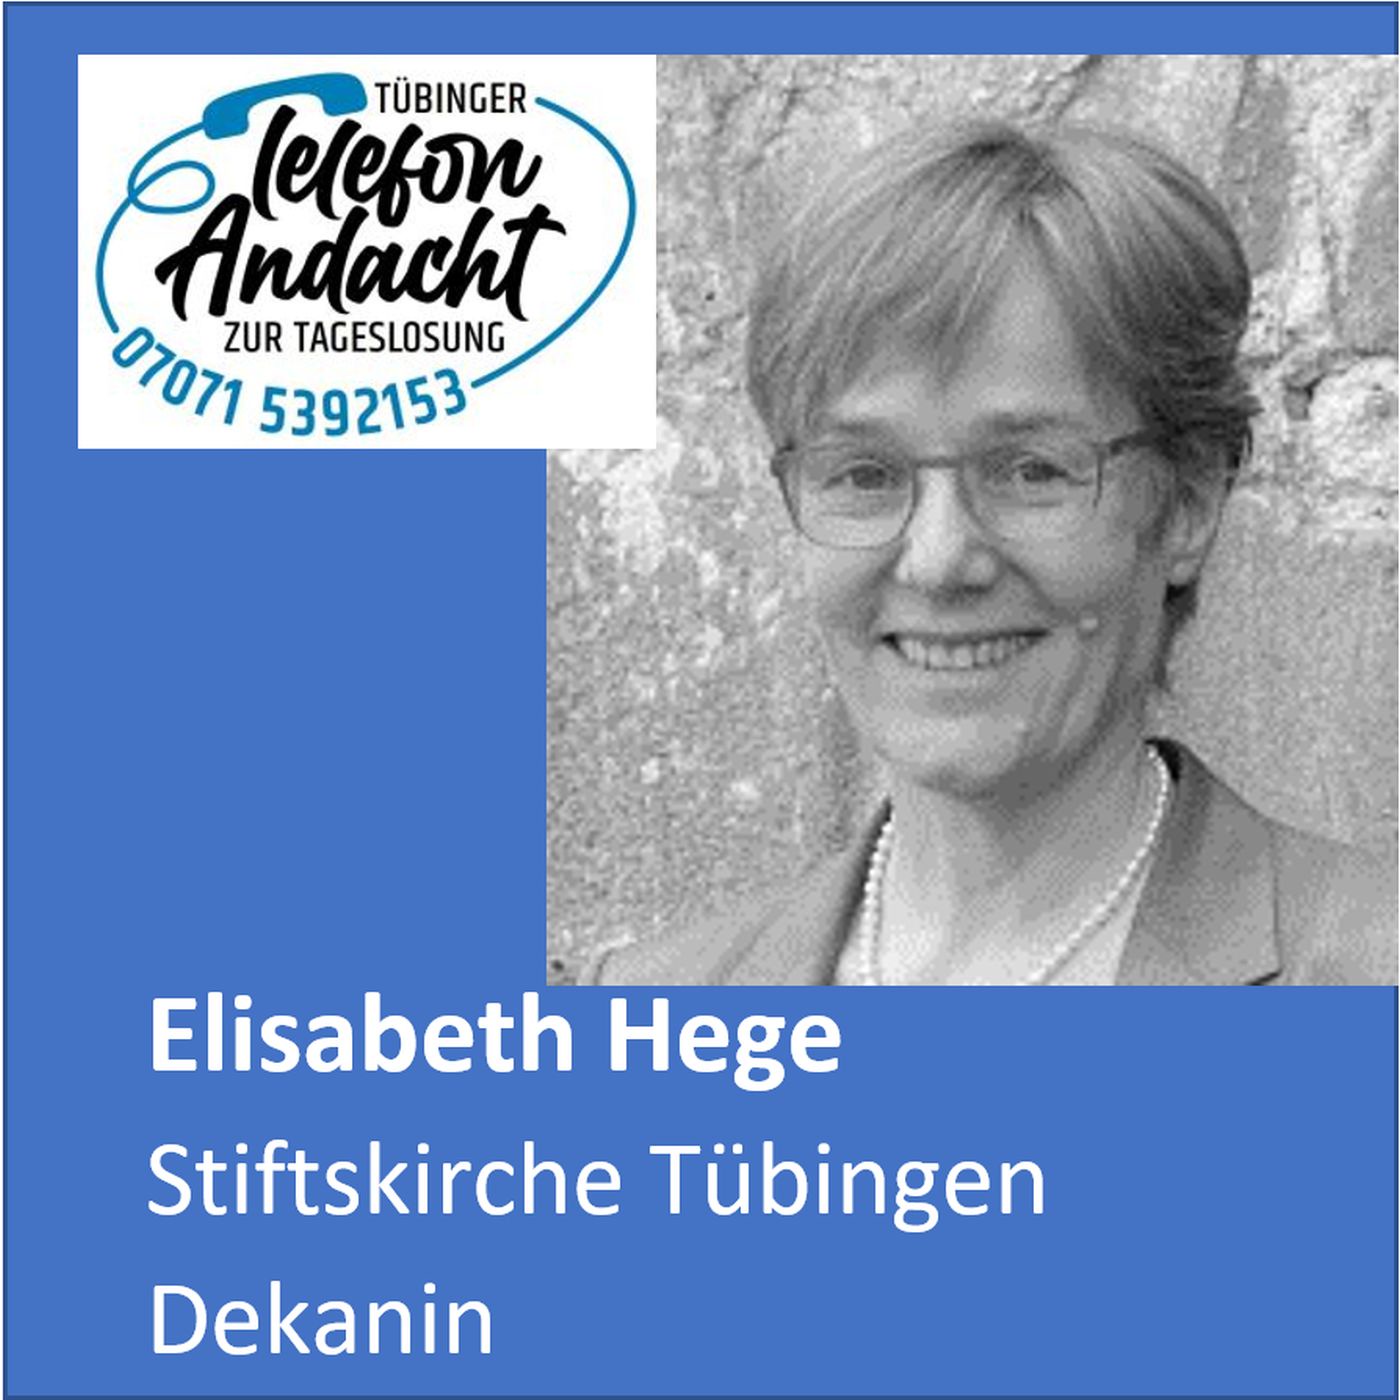 24 04 29 Elisabeth Hege